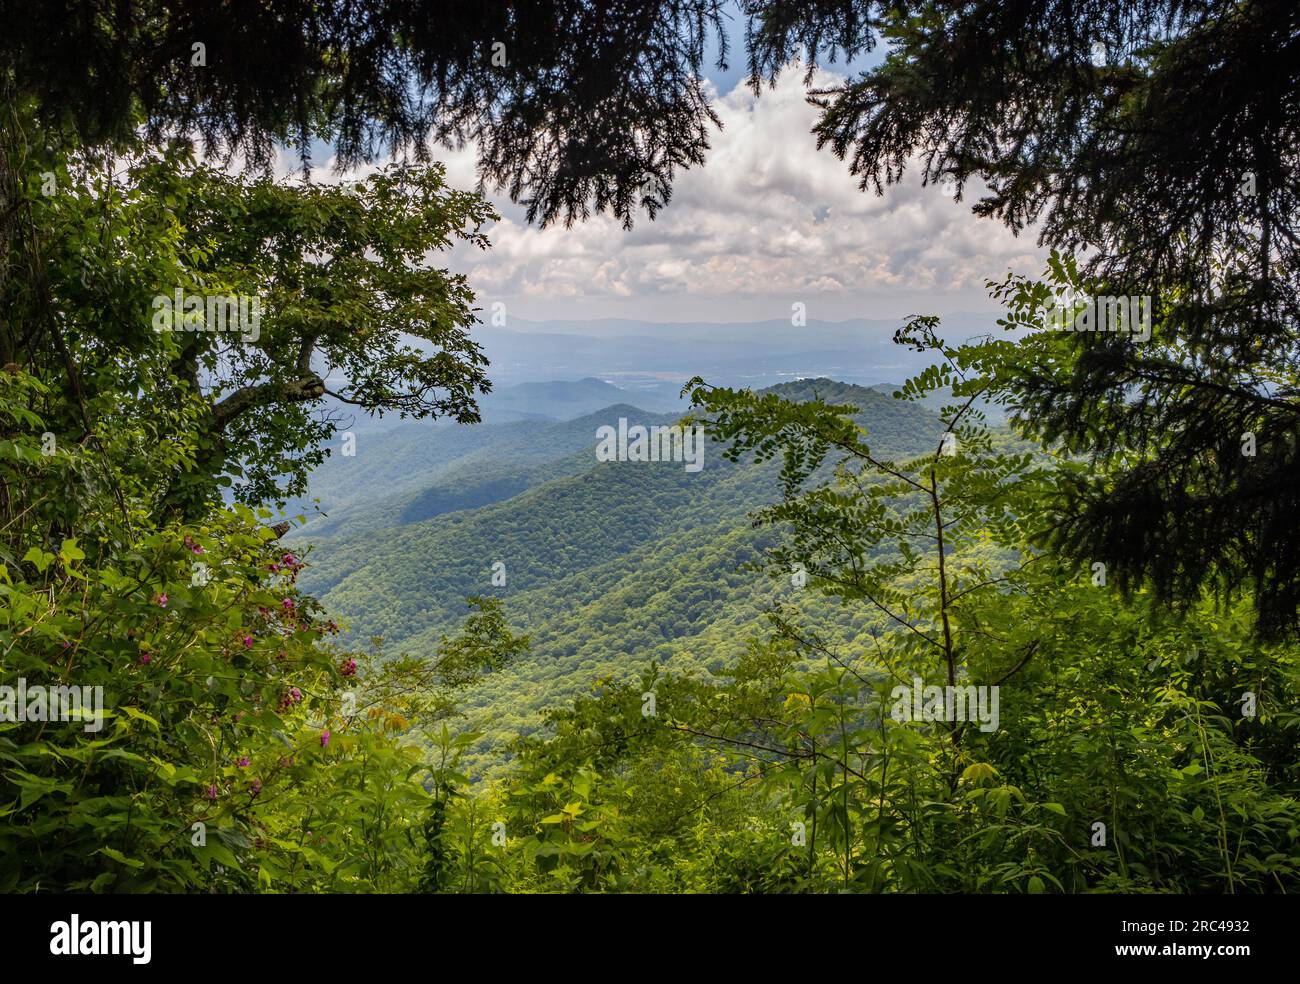 A view of the Blue Ridge Mountains through a frame of foliage. Stock Photo